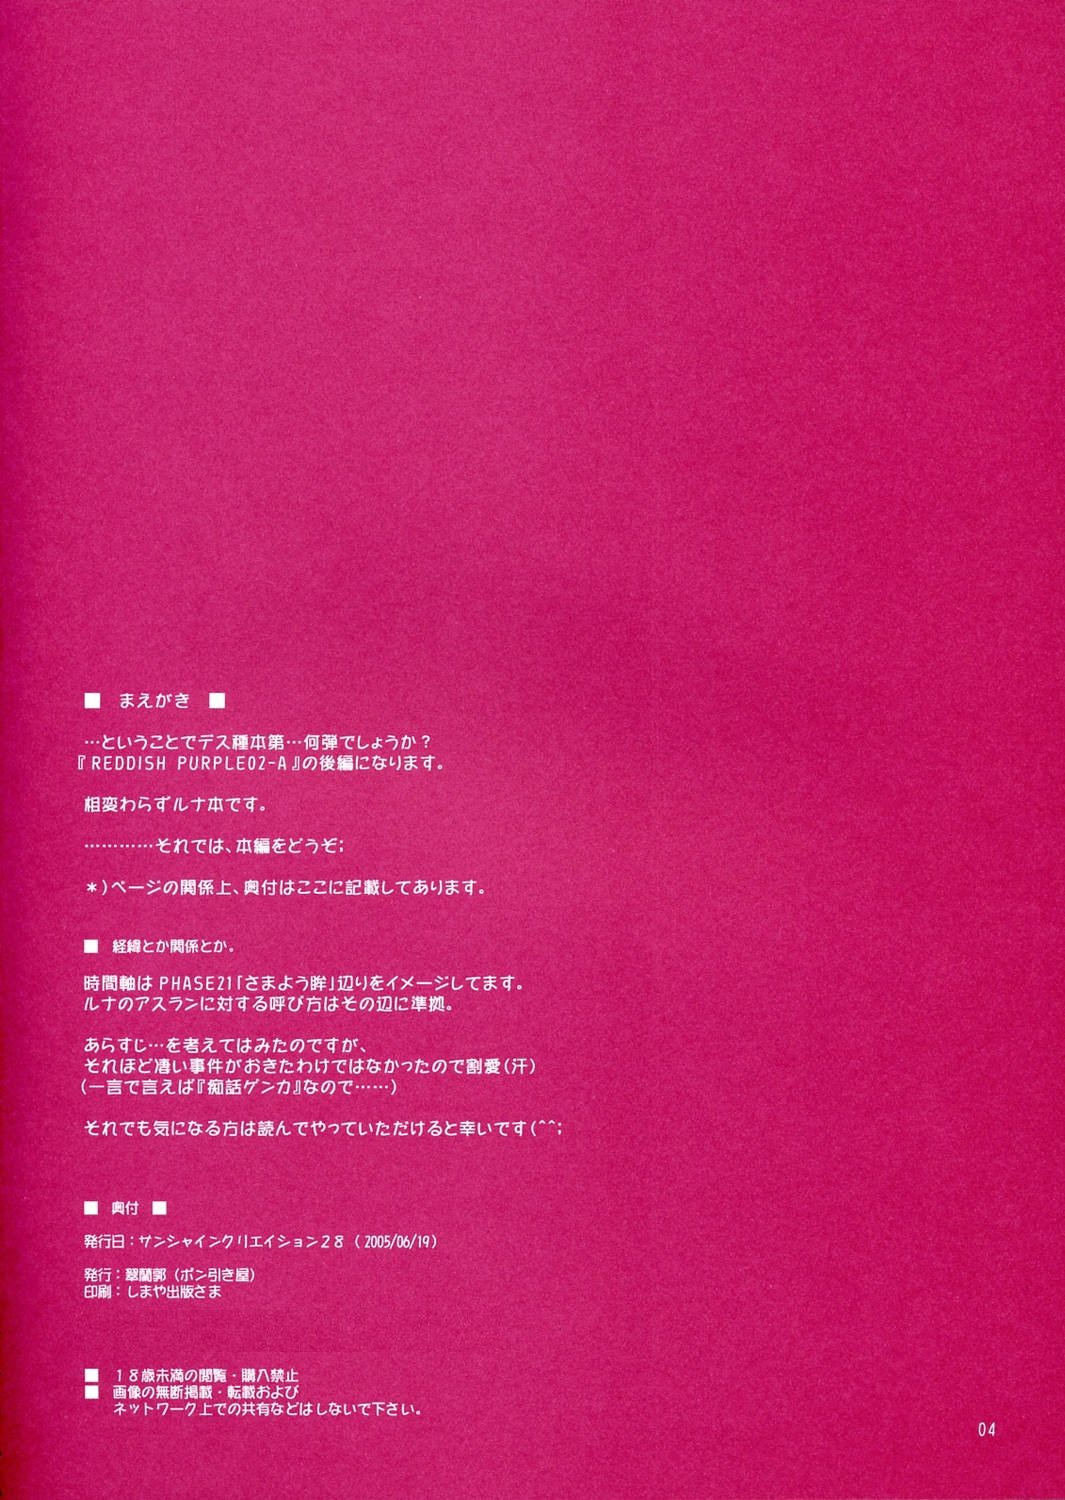 (SC28) [Ponbikiya, Suirankaku (Ibuki Pon)] REDDISH PURPLE-02B (Gundam Seed Destiny) page 3 full